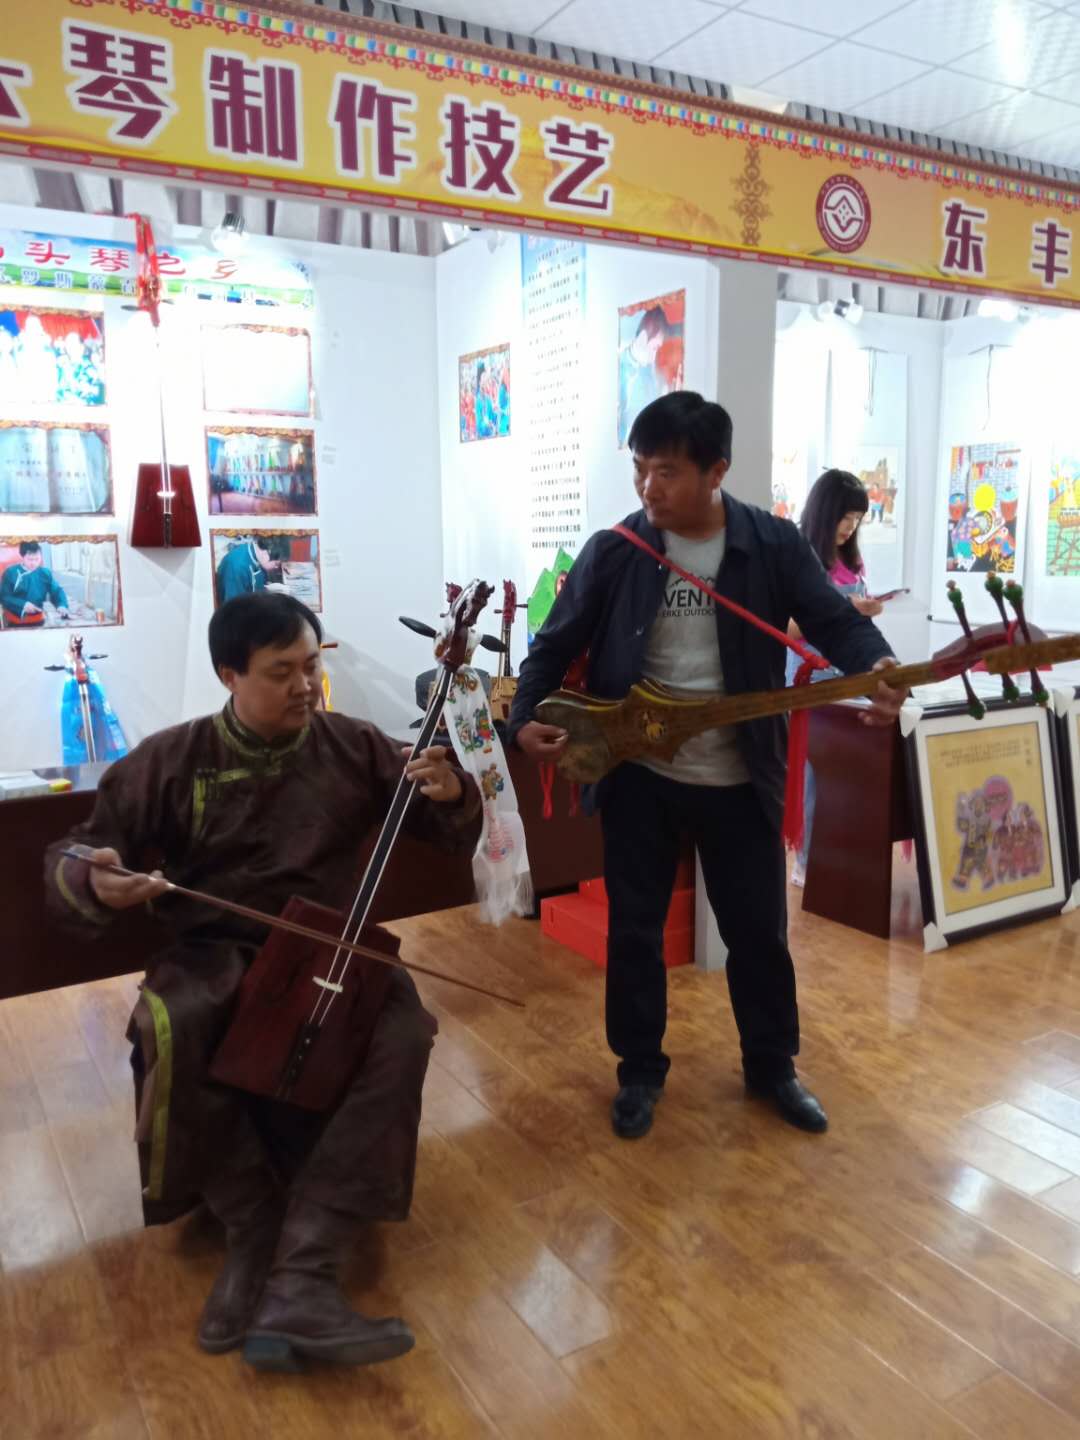 Небольшие виды рукоделия и ремесел, великие литературные сочинения и духовное наследие провинции Цзилинь, передающиеся через поколения, были представлены на 17-м культурно-туристическом фестивале Джомолунгма в тибетском городе Шигацзе